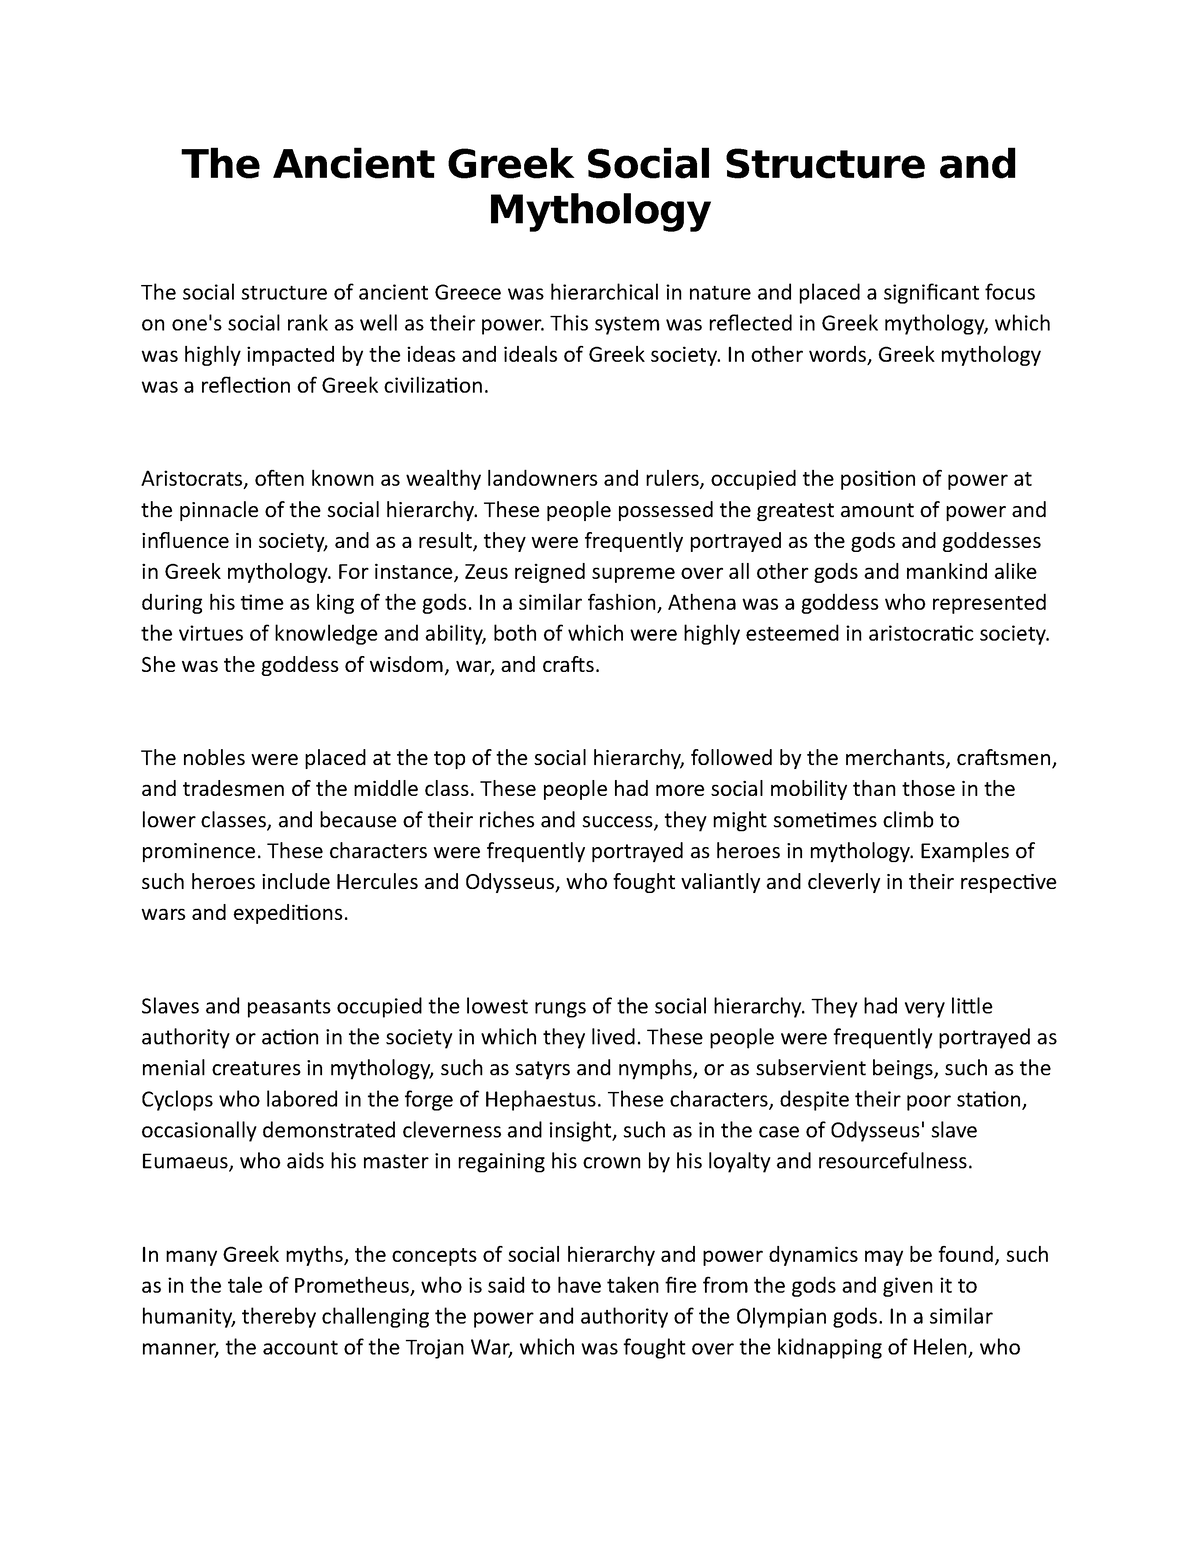 greek mythology extended essay